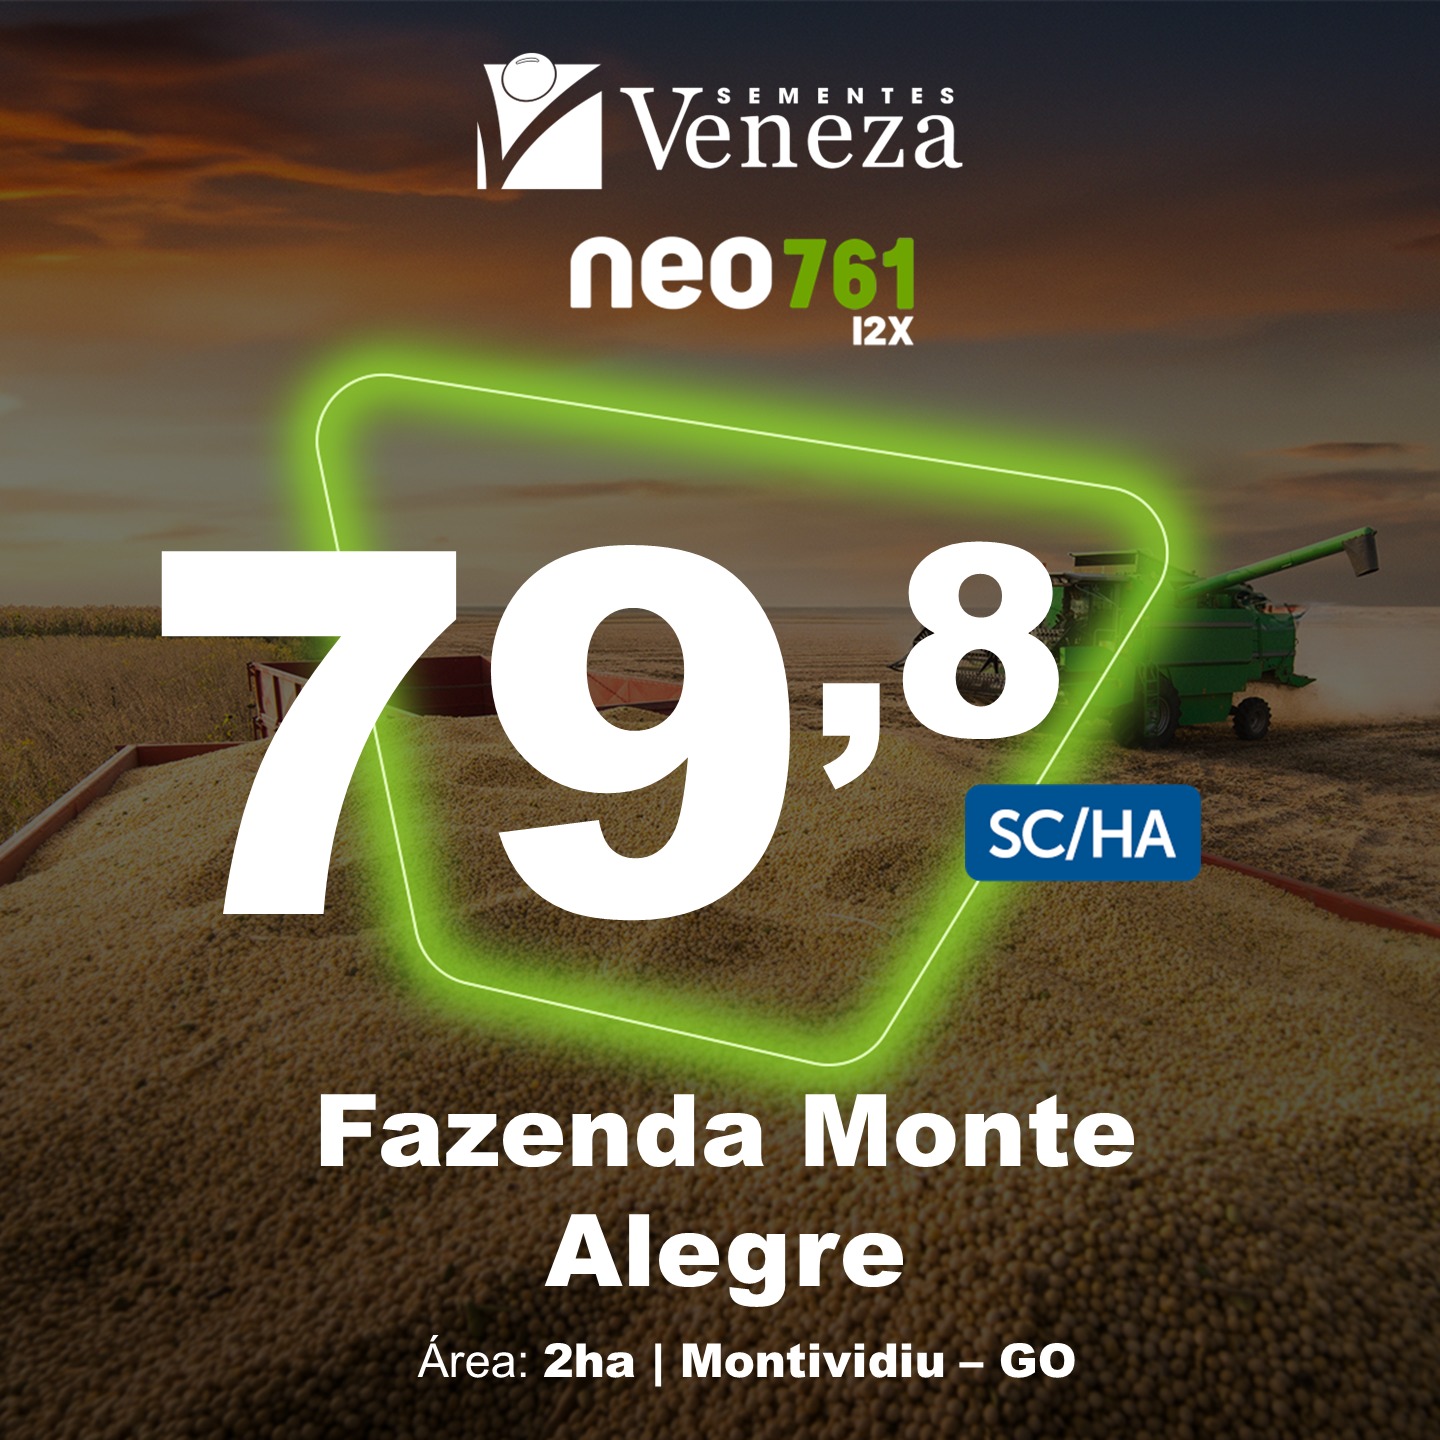 Fazenda Monte Alegre Neo – 761